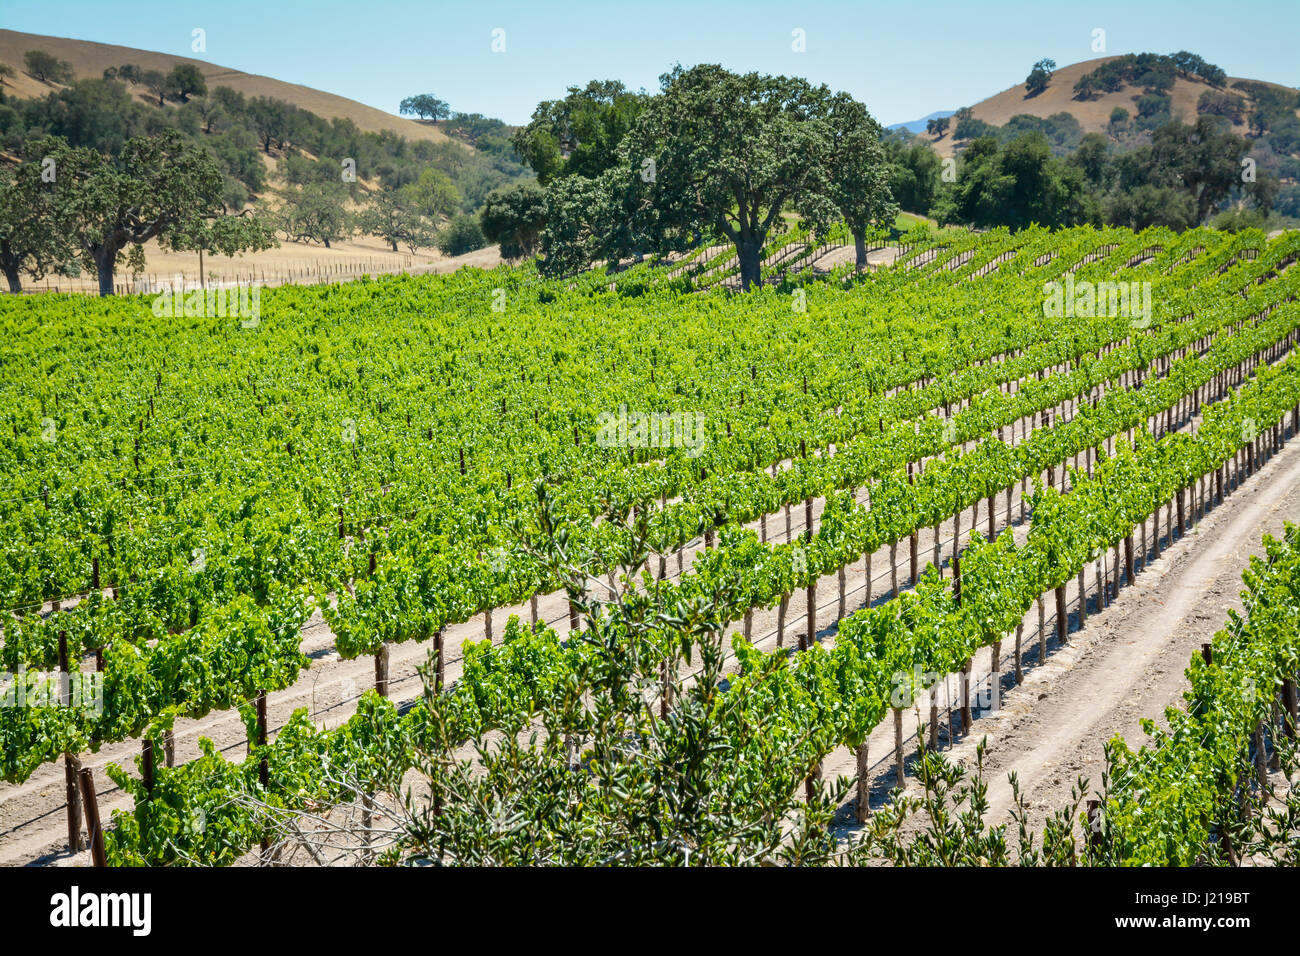 Spalieren Weinstöcke trail entlang der Zeilen eines Weinbergs inmitten der sanften Hügel und Berge von Santa Ynez Tal Wein-Land in Kalifornien Stockfoto